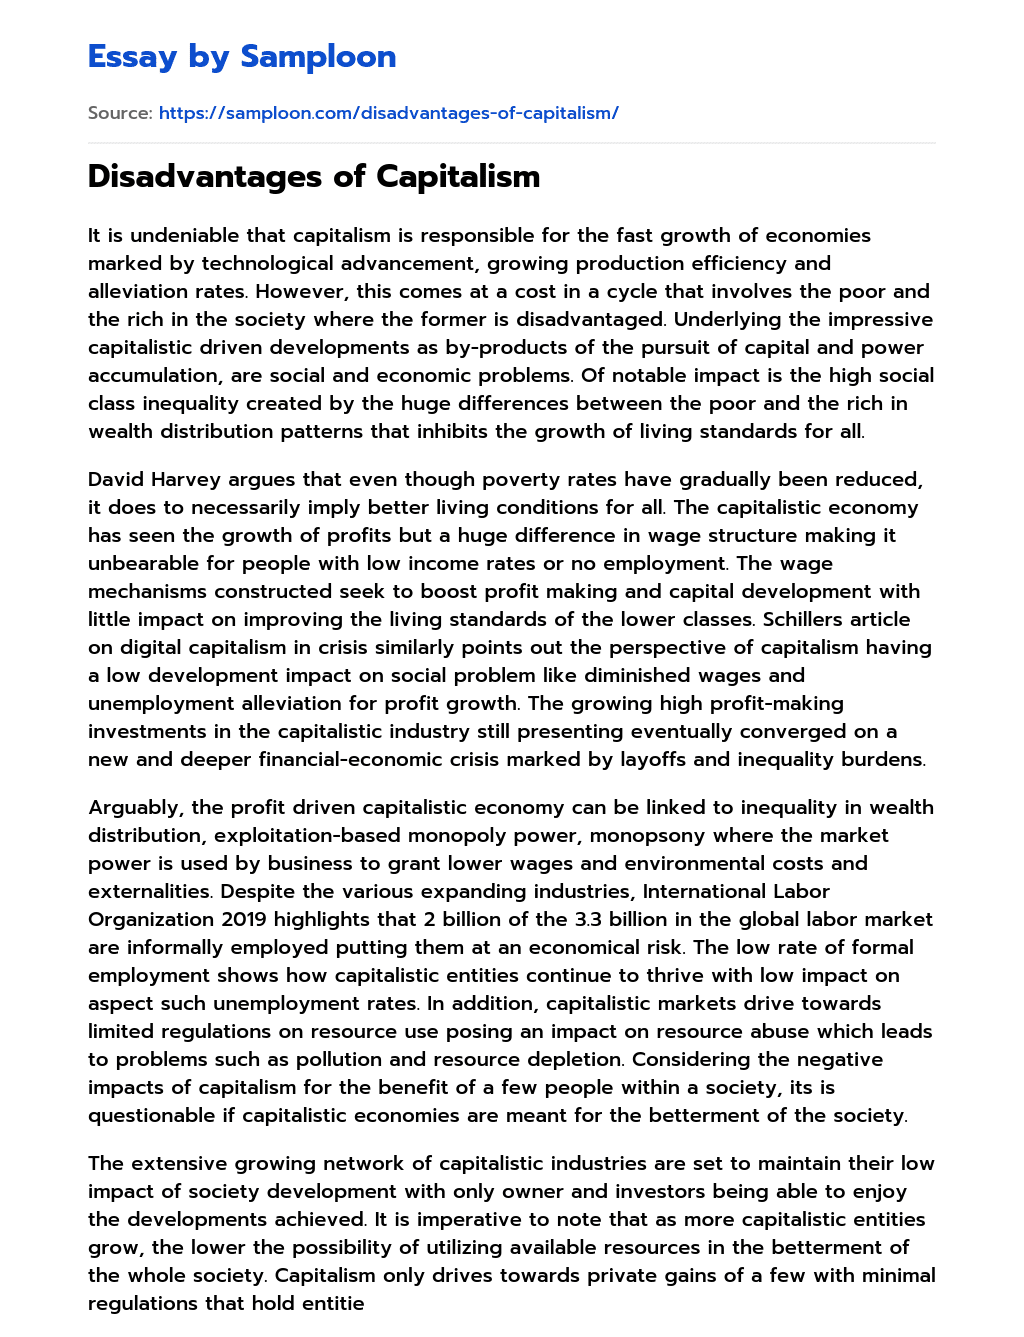 Disadvantages of Capitalism essay